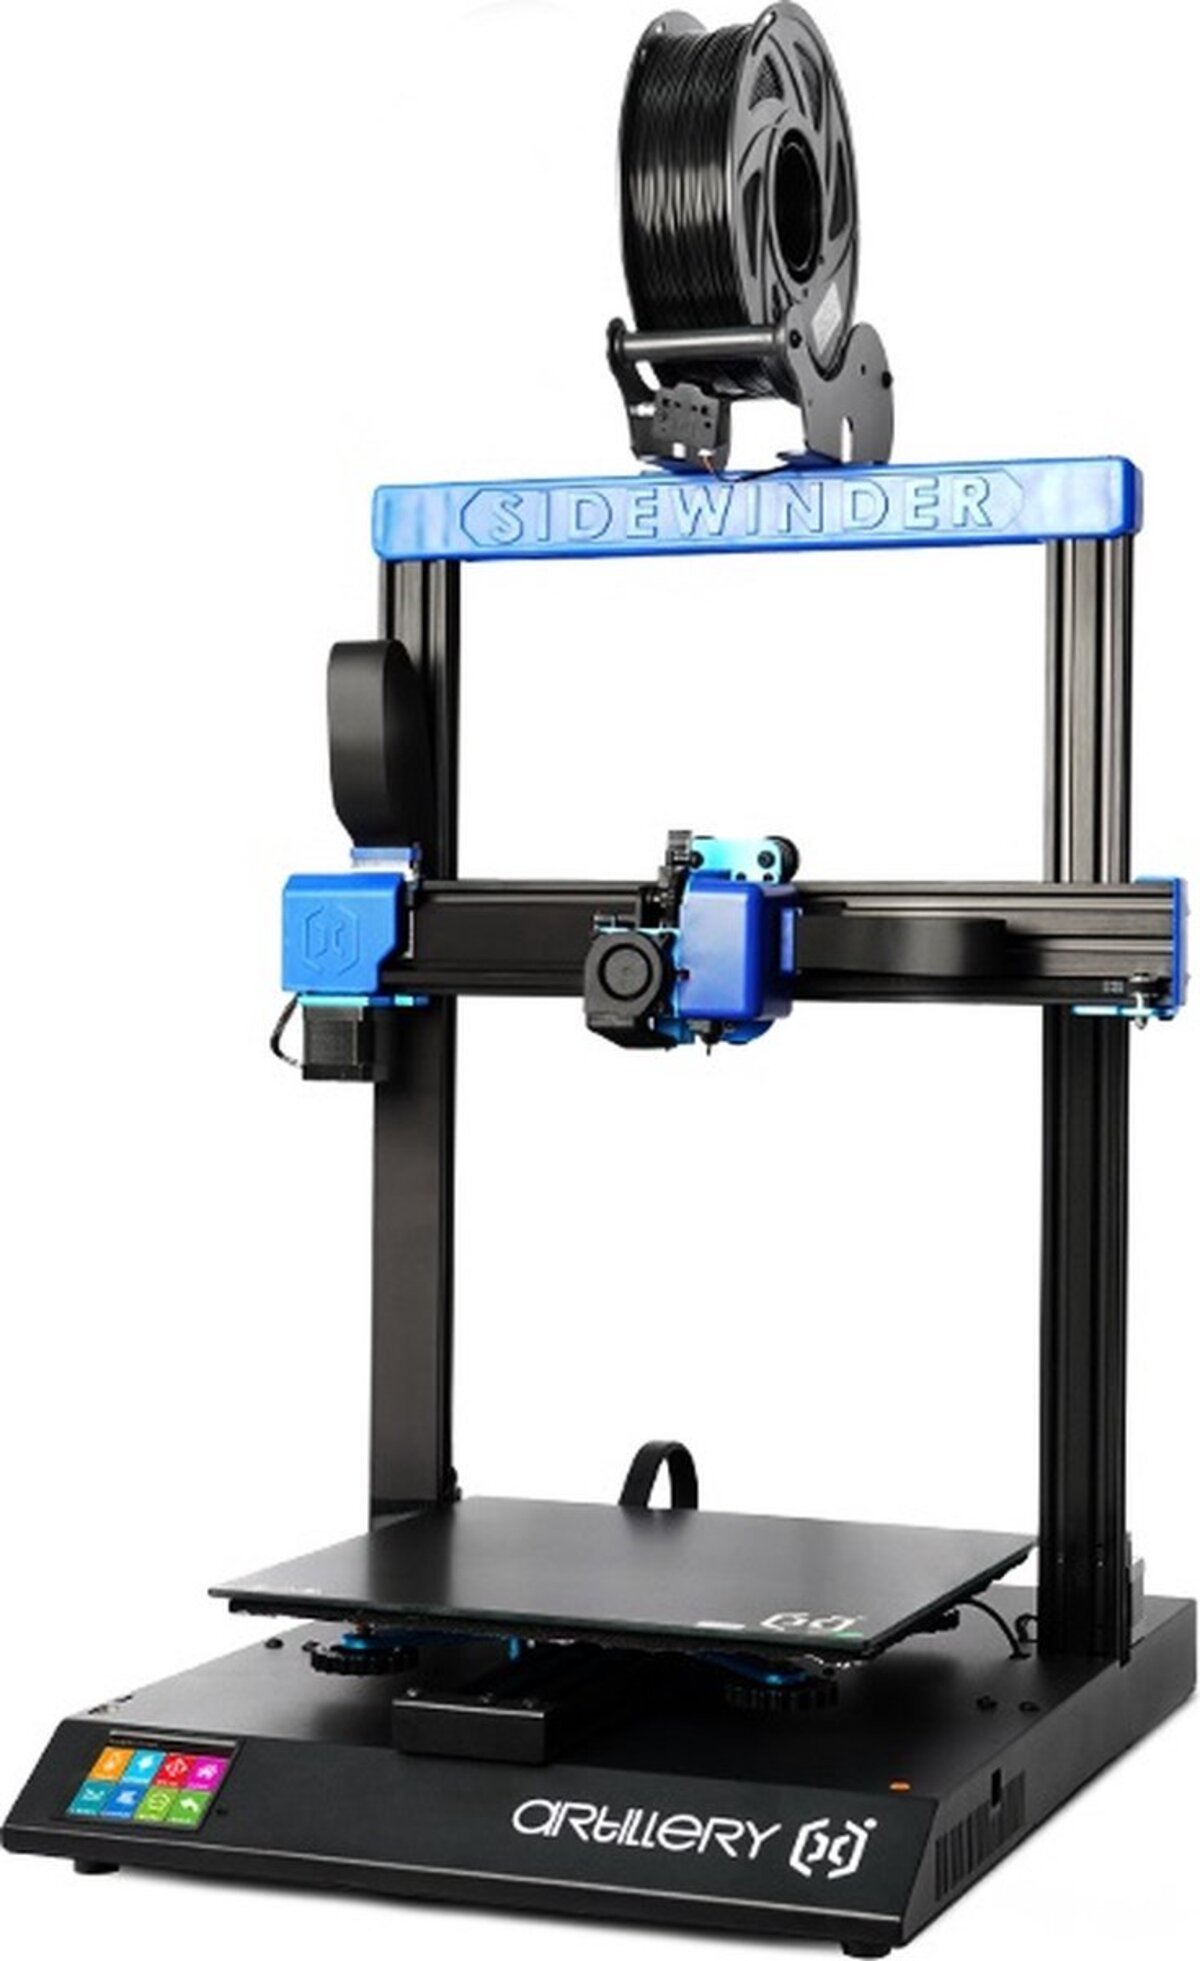 ARTILLERY Sidewinder X2 3D Printer Drive Extruder Direct Auto-Level 300x300x400mm 3D FDM Drucker